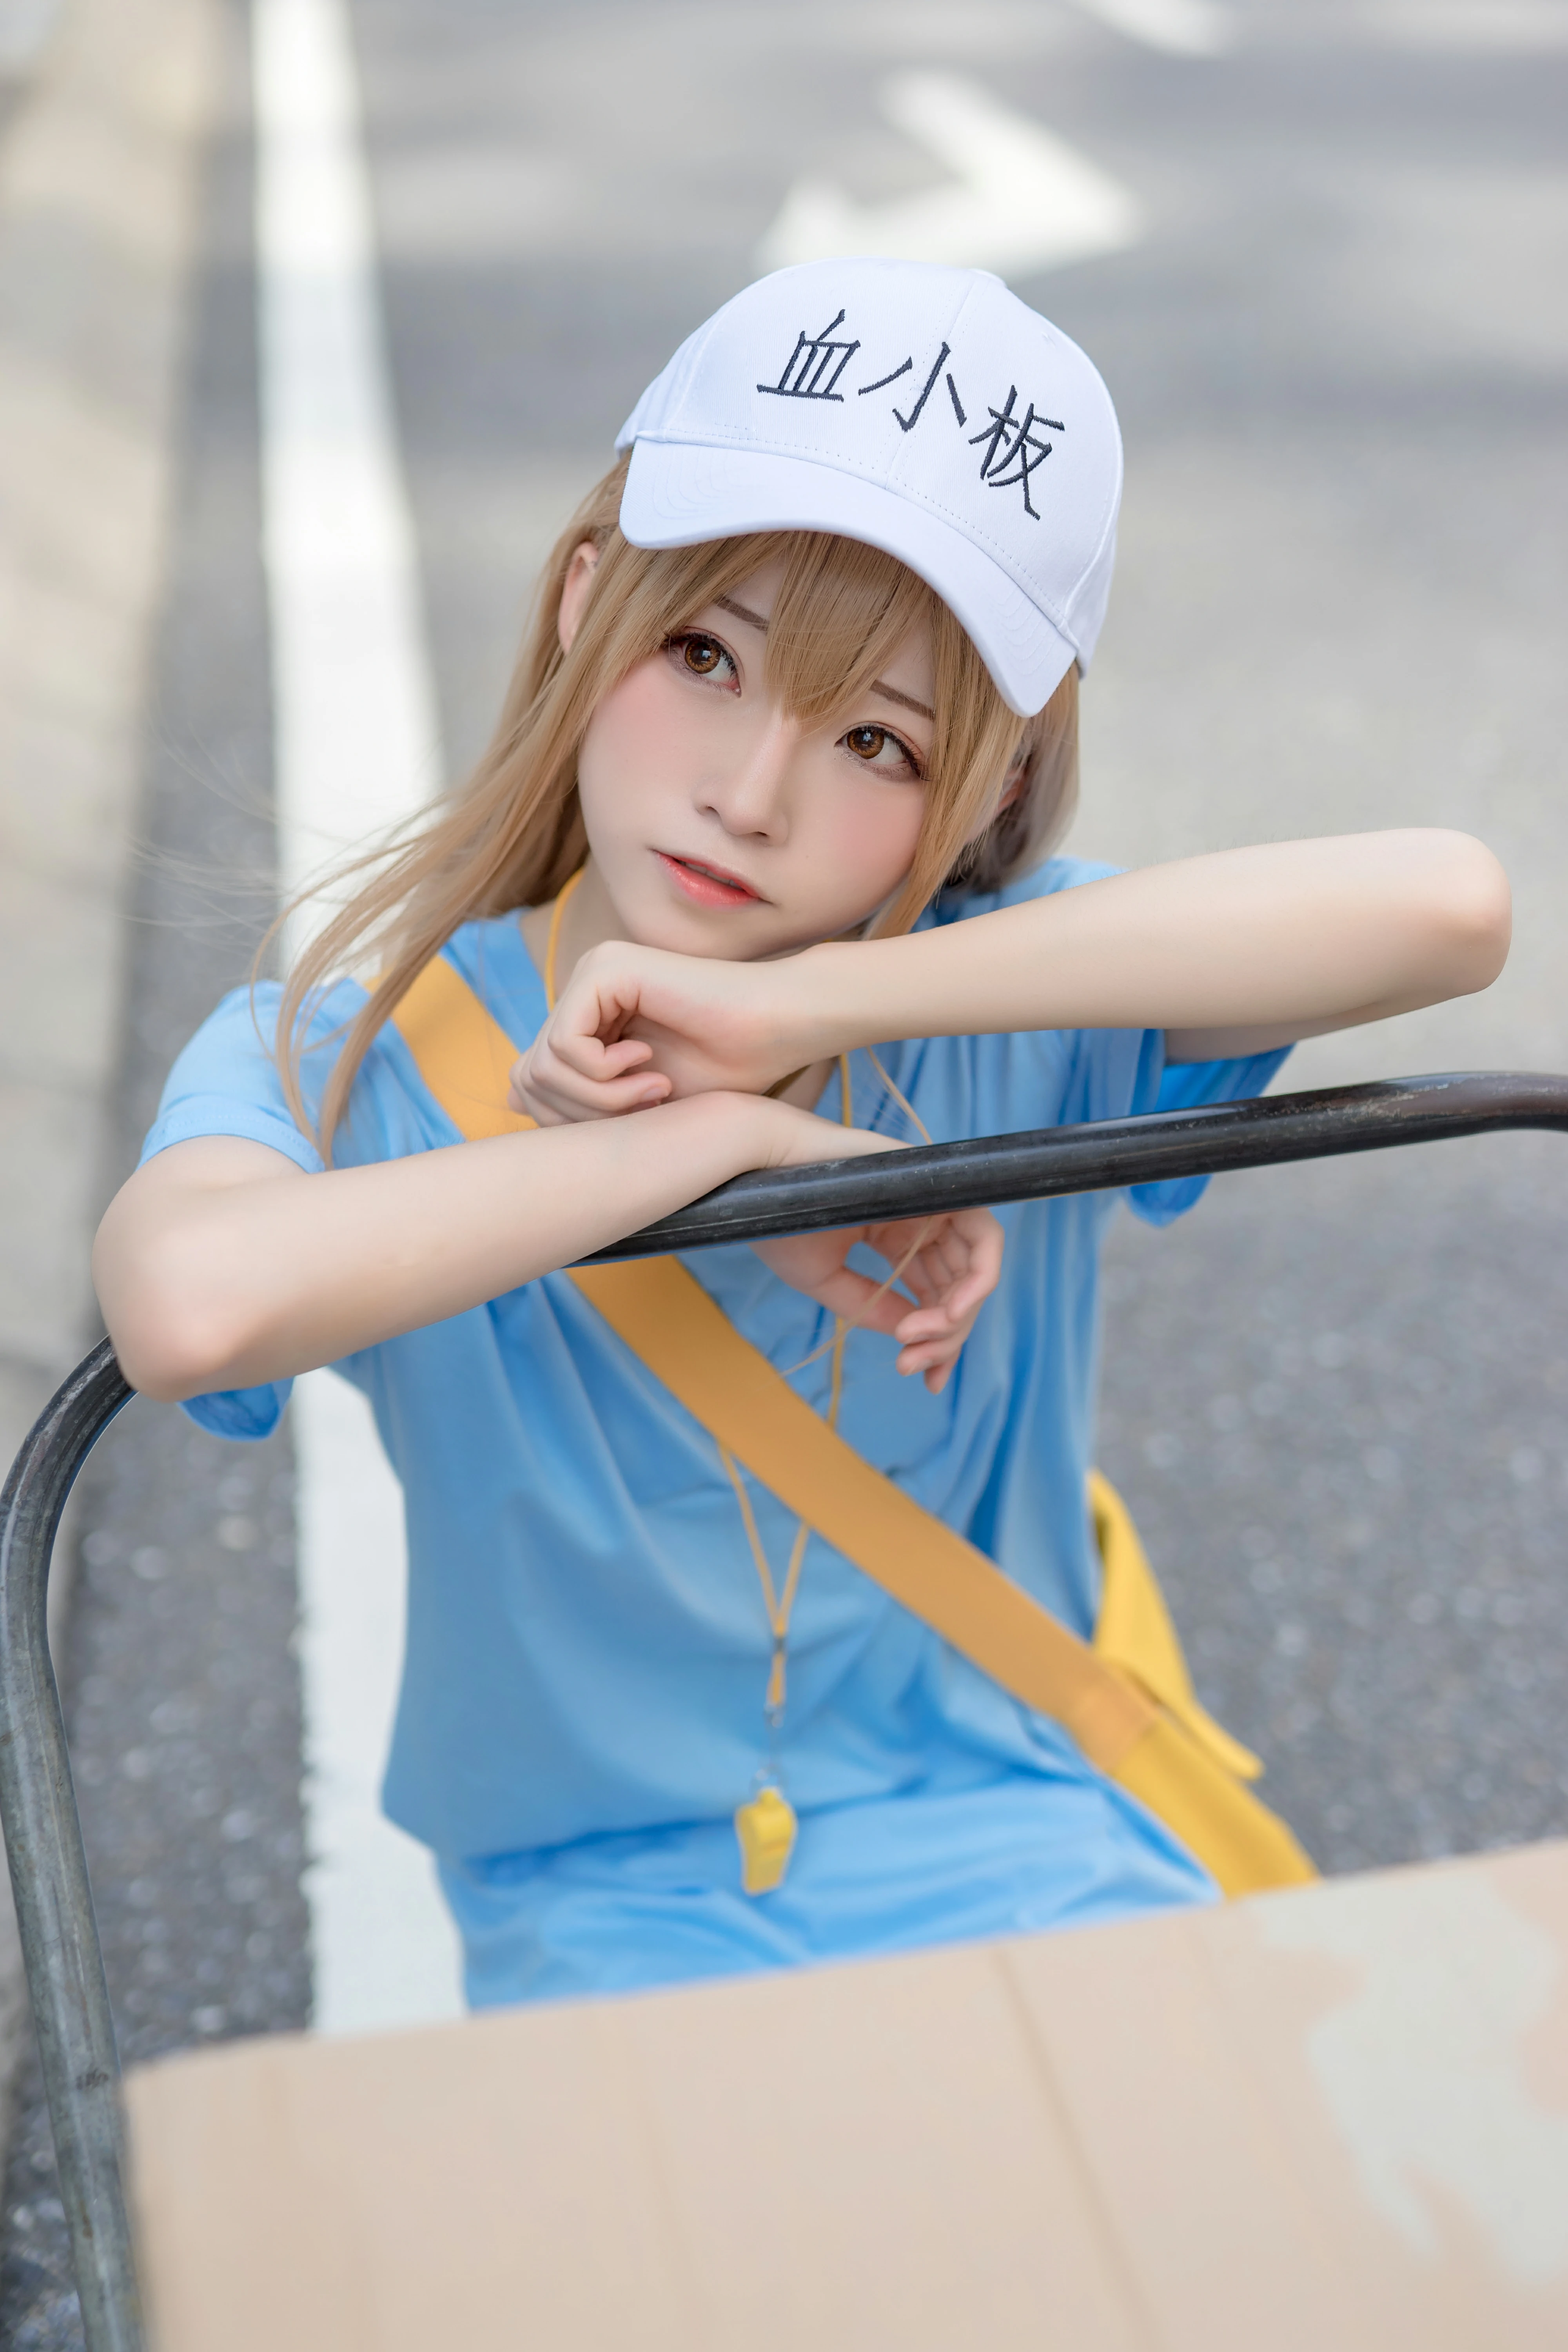 清纯少女快递员 绮太郎Kitaro 血小板 蓝色连身短袖街拍写真,1191